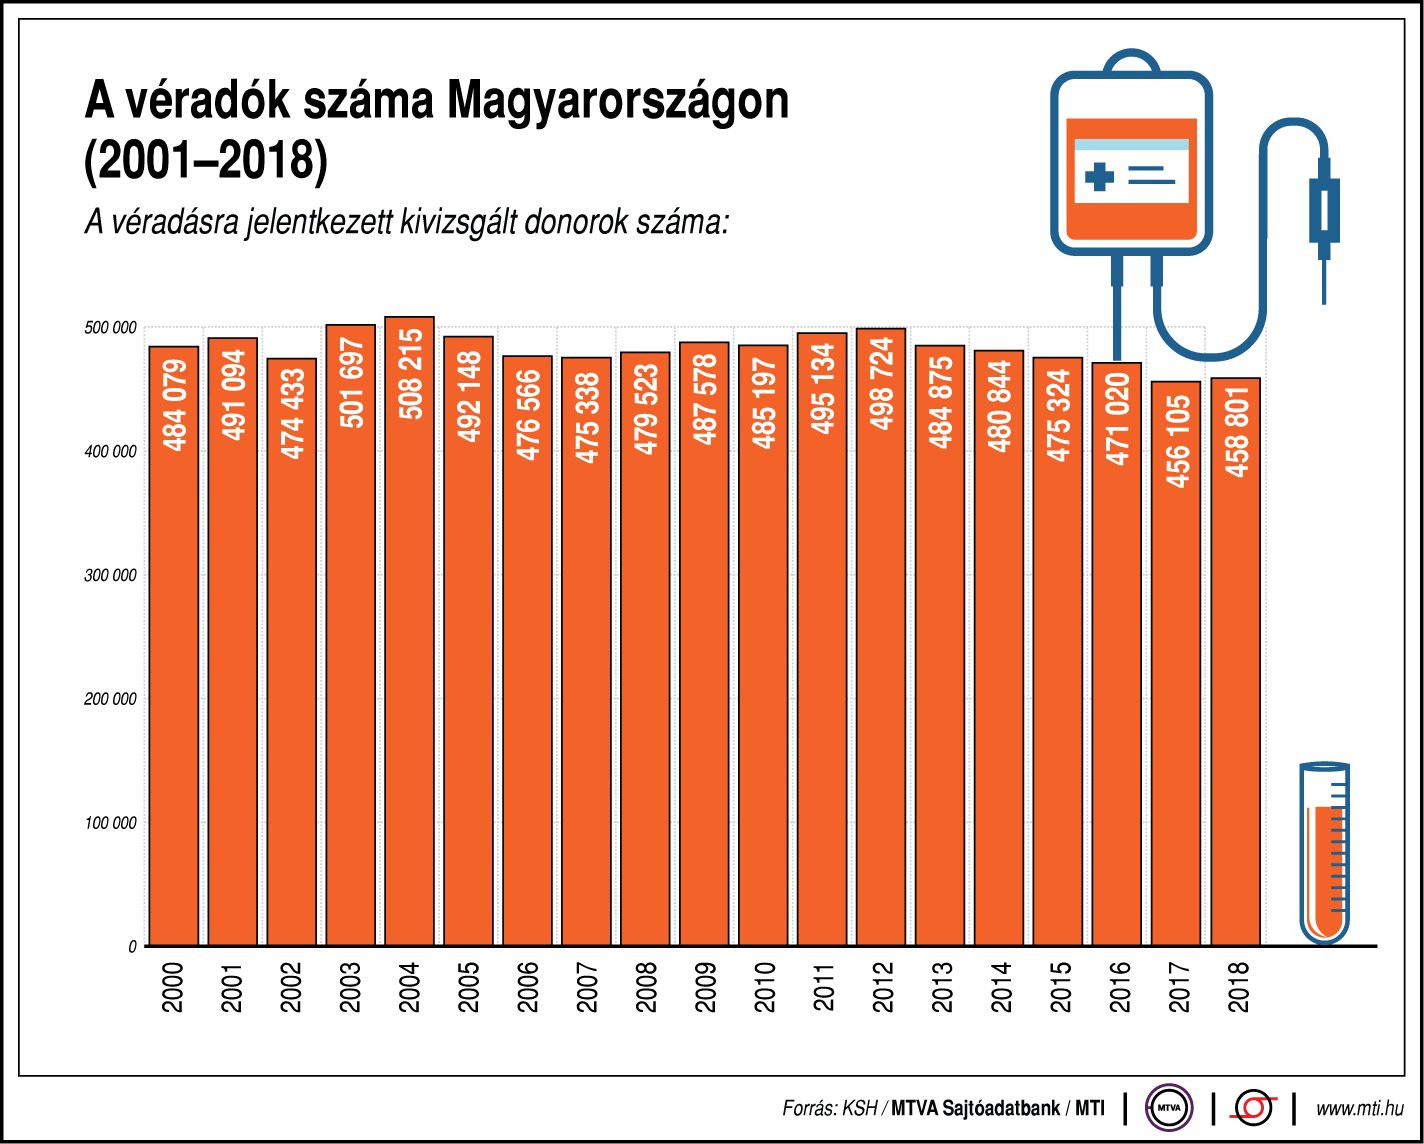 A véradásra jelentkezett kivizsgált donorok száma, 2000-2018